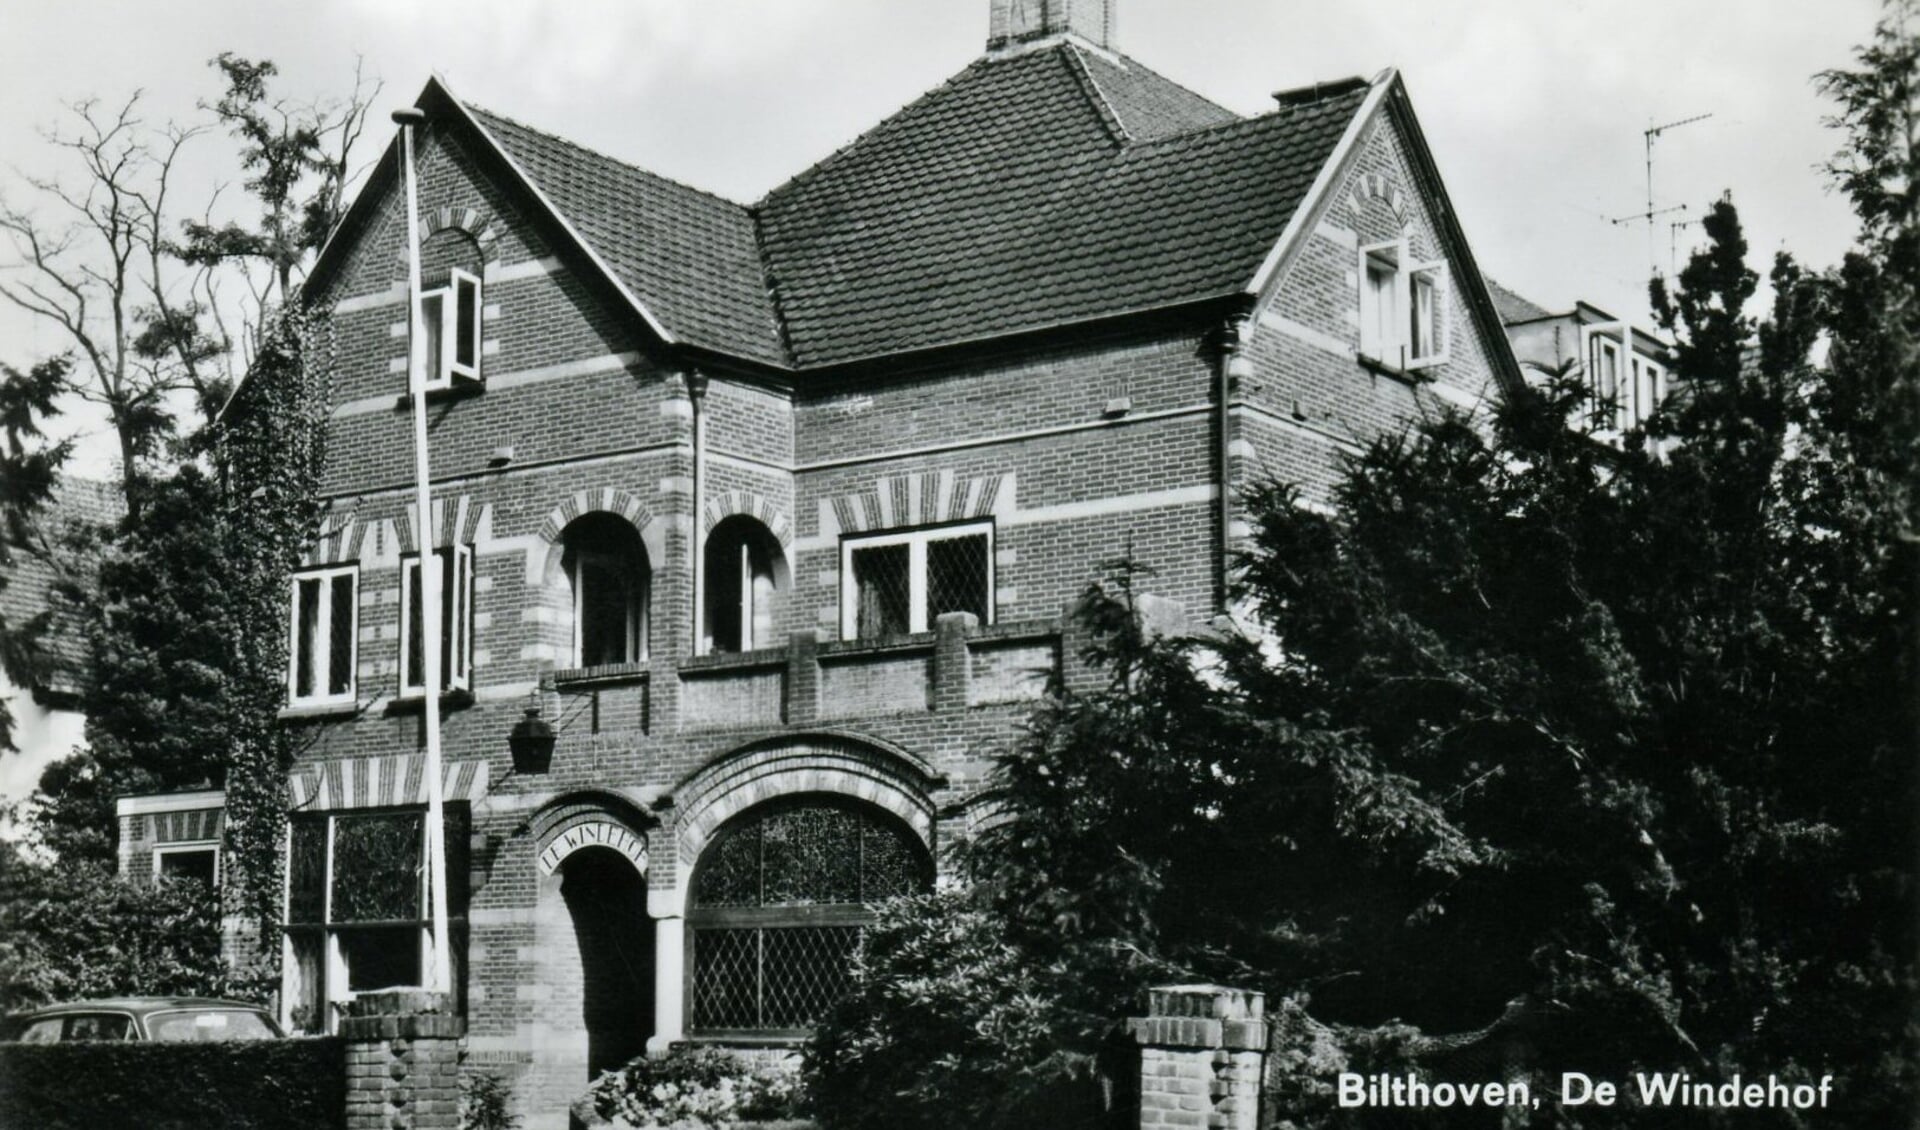 Het luxe verzorgingshuis ‘De Windenhof’aan de Rembrandtlaan (Bilthoven) in 1957 (foto Hist. Kring ‘dOudeSchool)